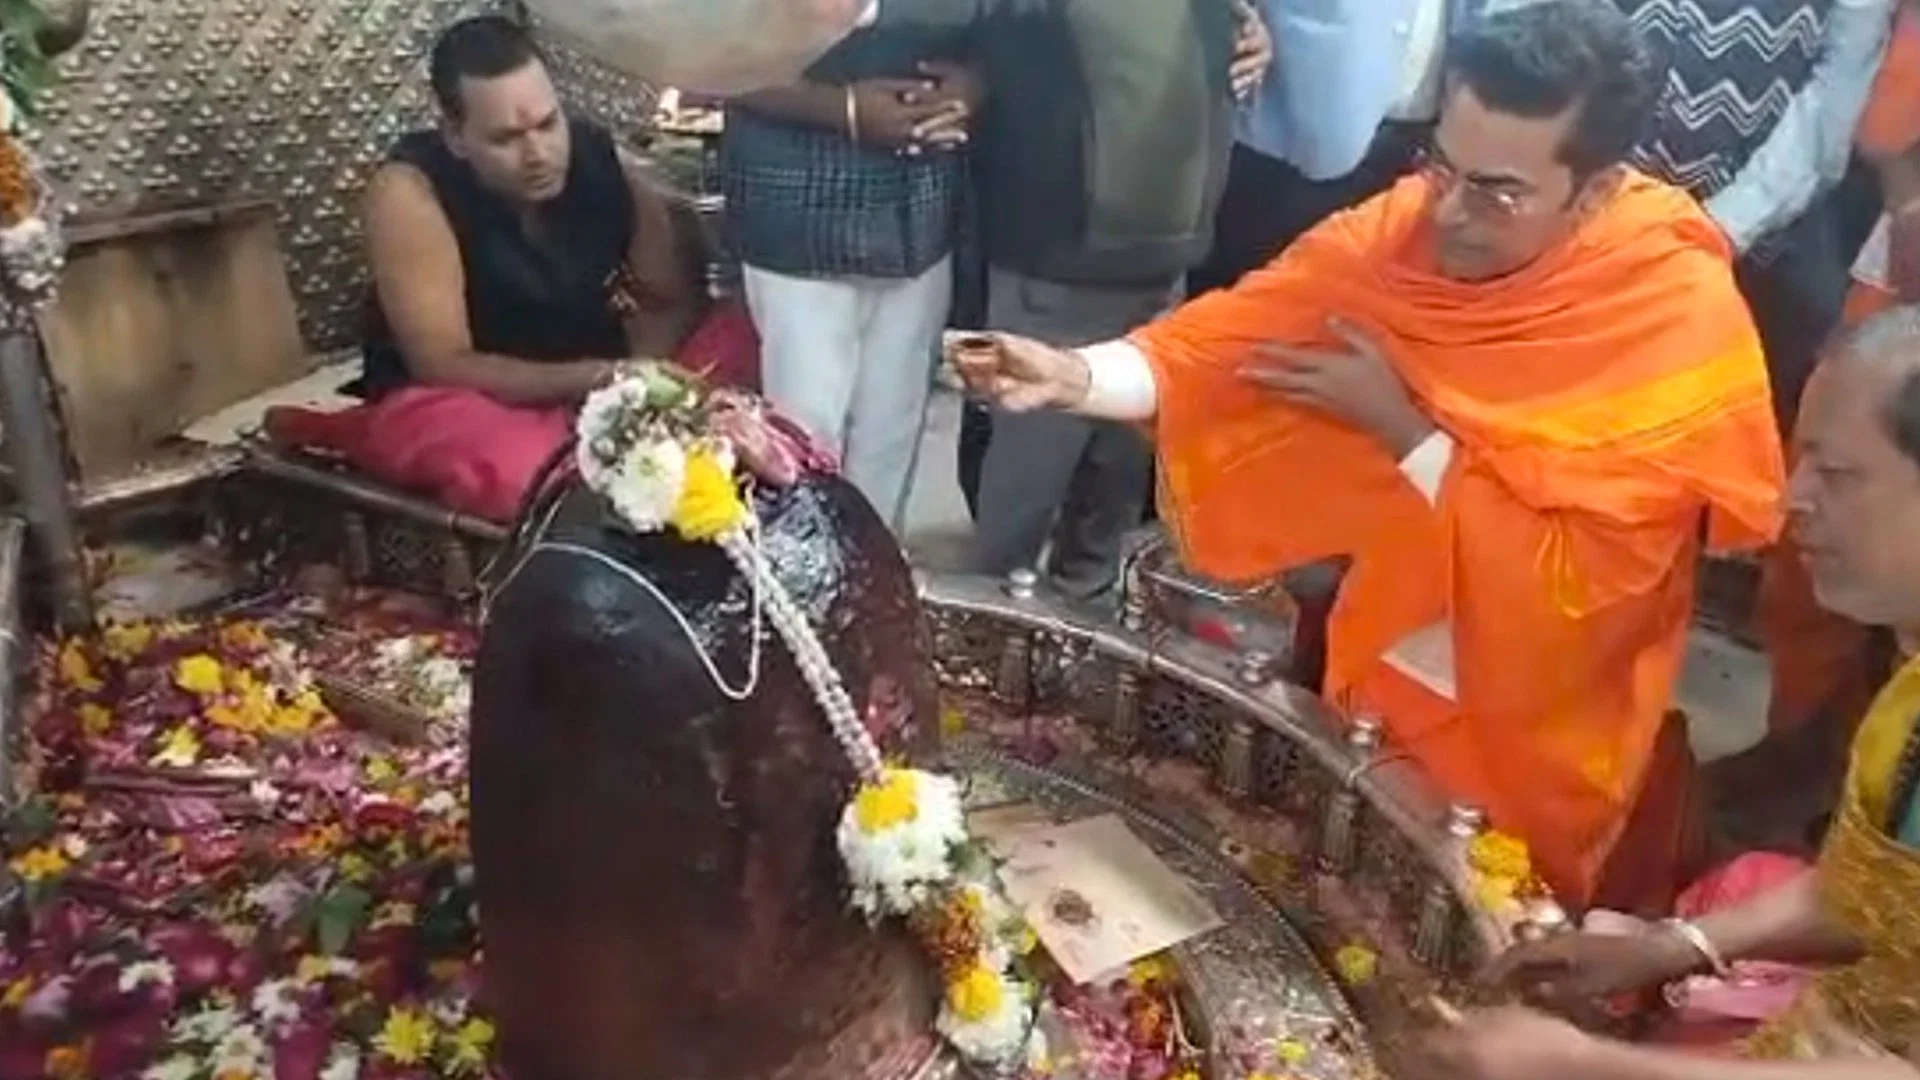 Ashutosh Rana: उज्जैन के श्री महाकालेश्वर मंदिर पहुंचे एक्टर आशुतोष राणा, भस्म आरती में भी लिया हिस्सा